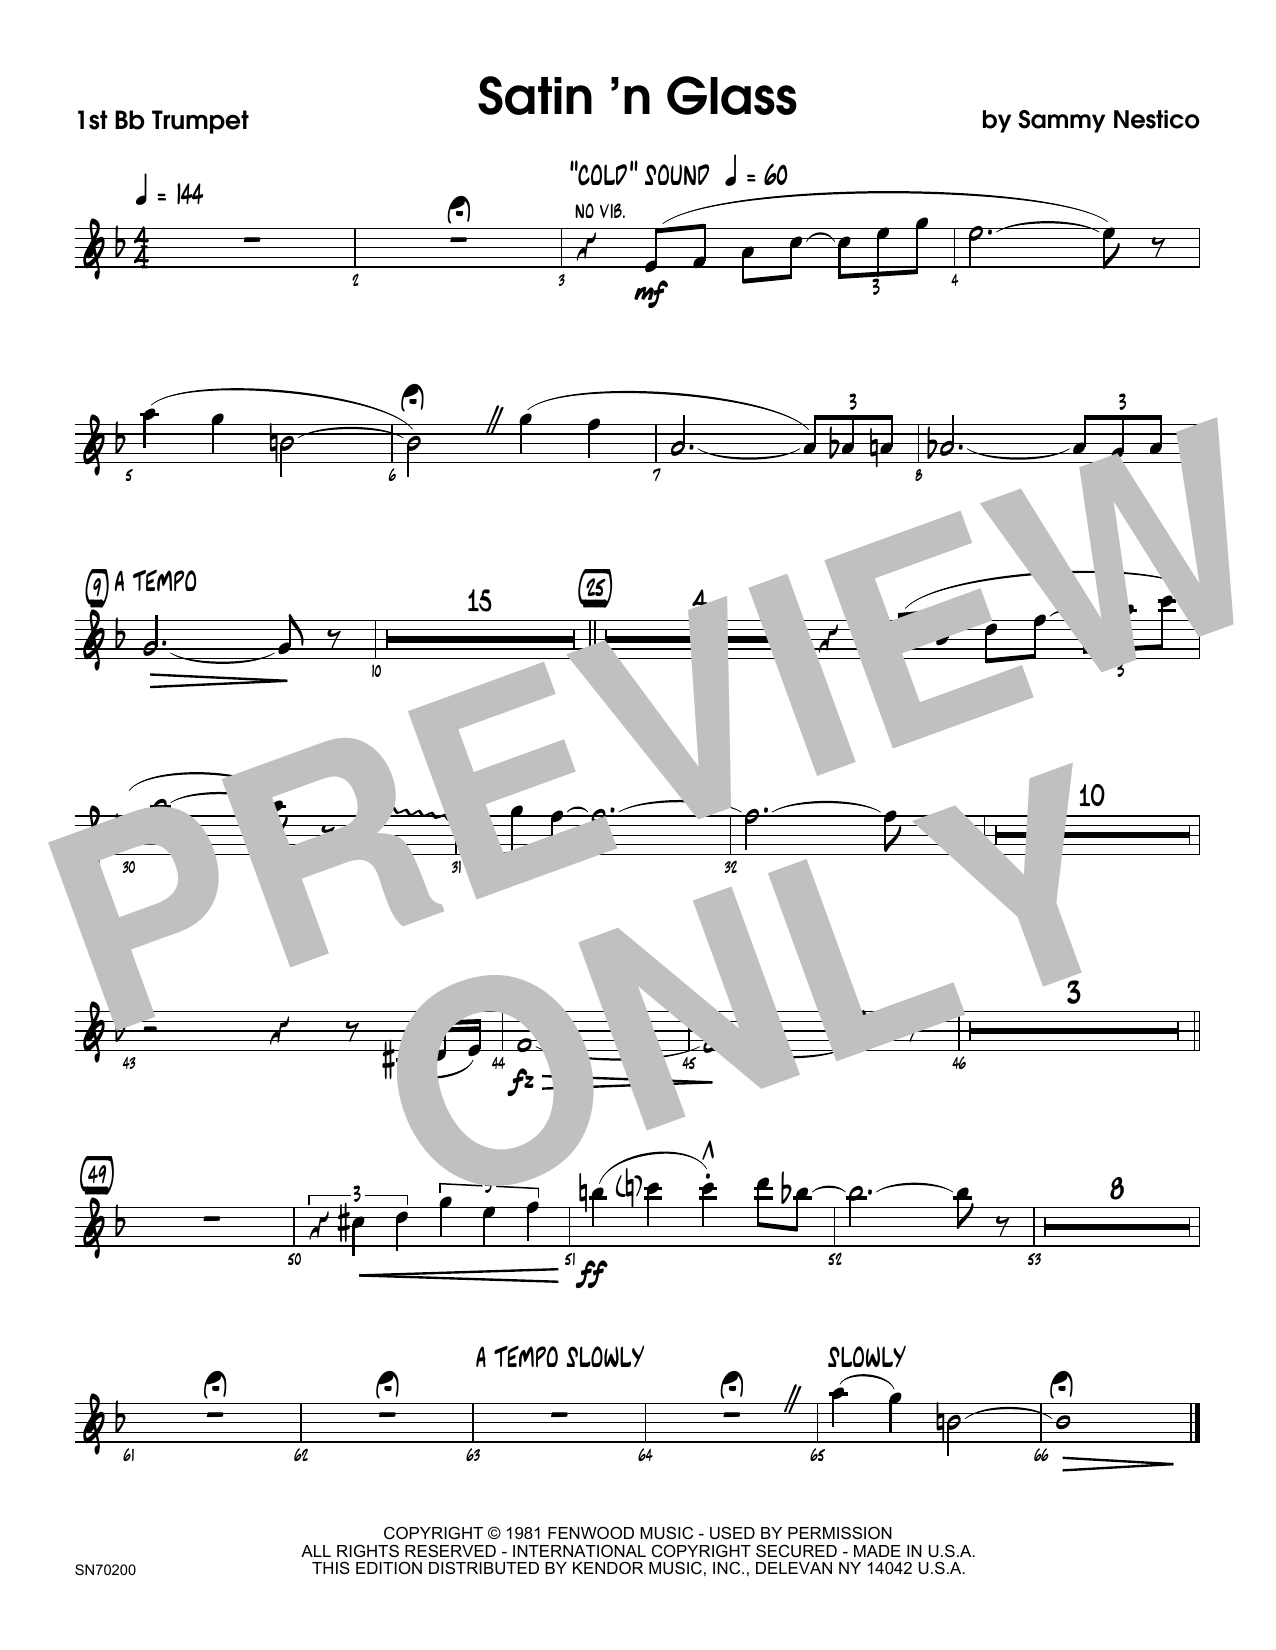 Download Sammy Nestico Satin 'n Glass - 1st Bb Trumpet Sheet Music